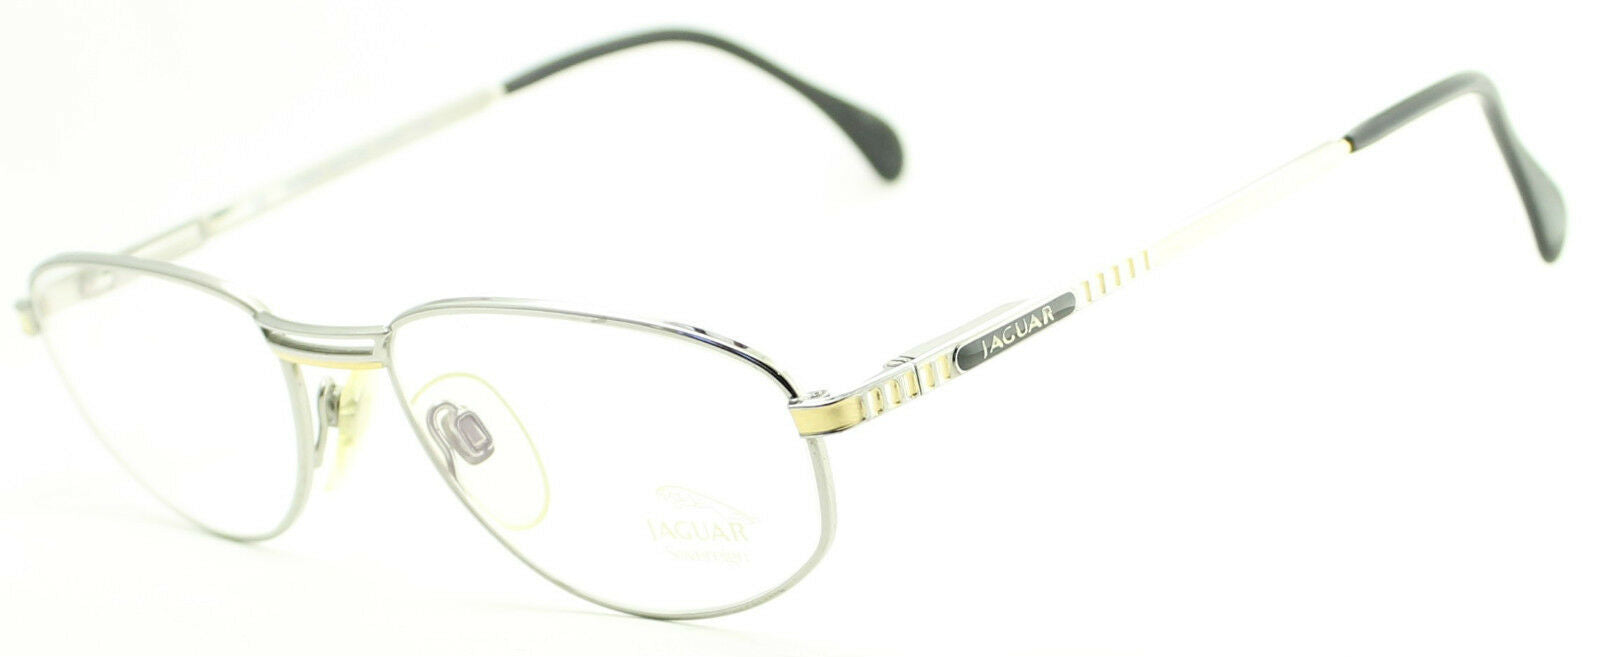 JAGUAR 3330 650 Vintage Gents Eyewear RX Optical FRAMES Eyeglasses Glasses - New